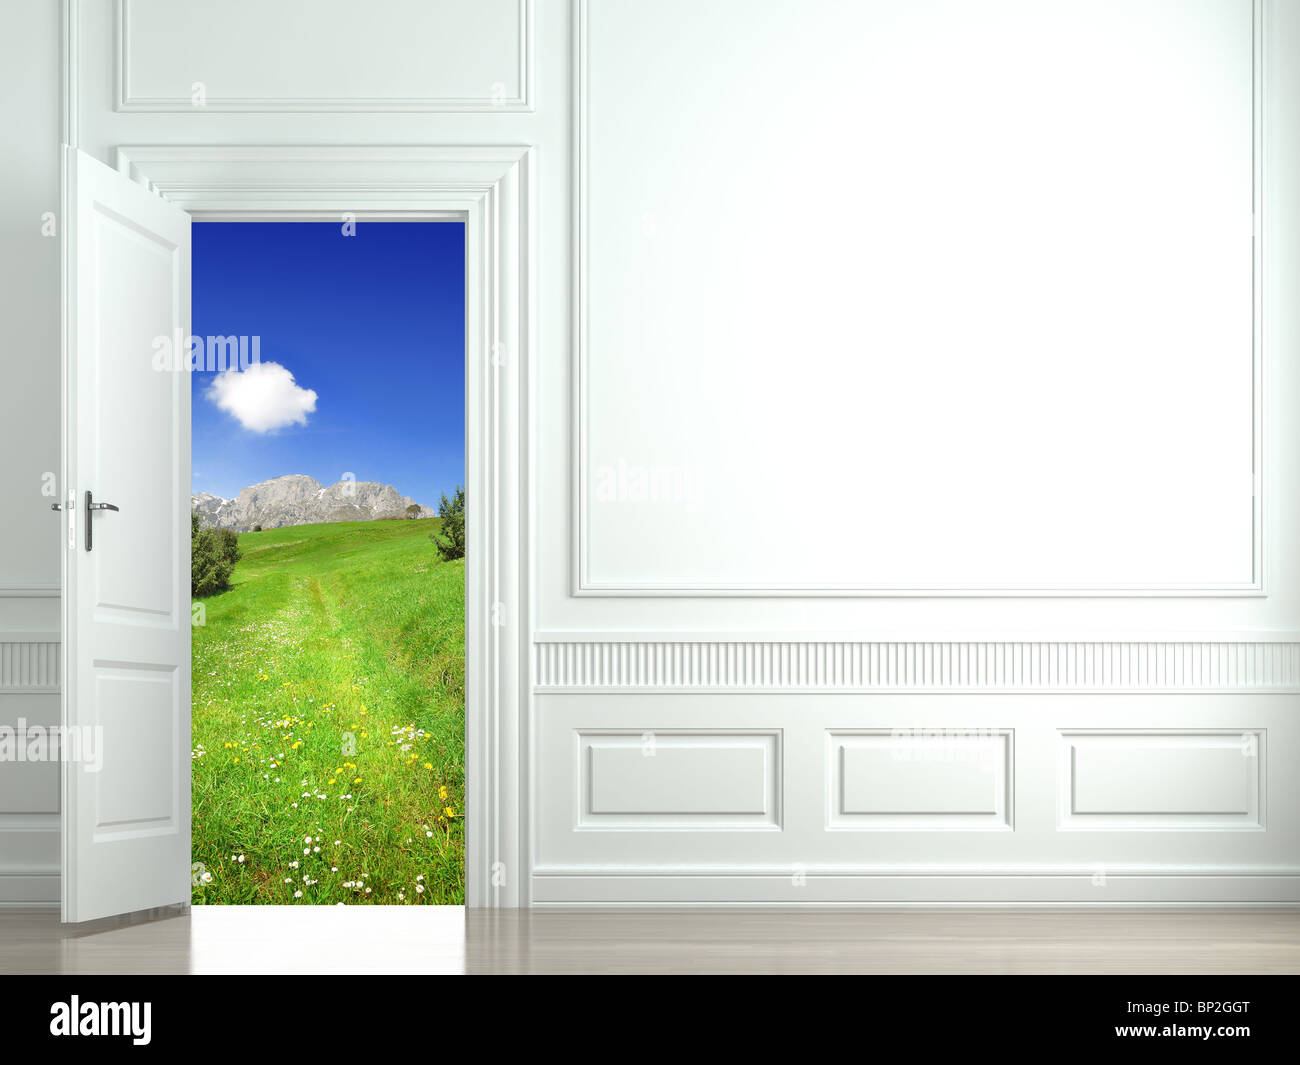 Mauer mit einer offenen Tür, eine wunderschöne Landschaft. Dieses Bild enthält einen Beschneidungspfad für einen einfachen Austausch der Landschaft Stockfoto